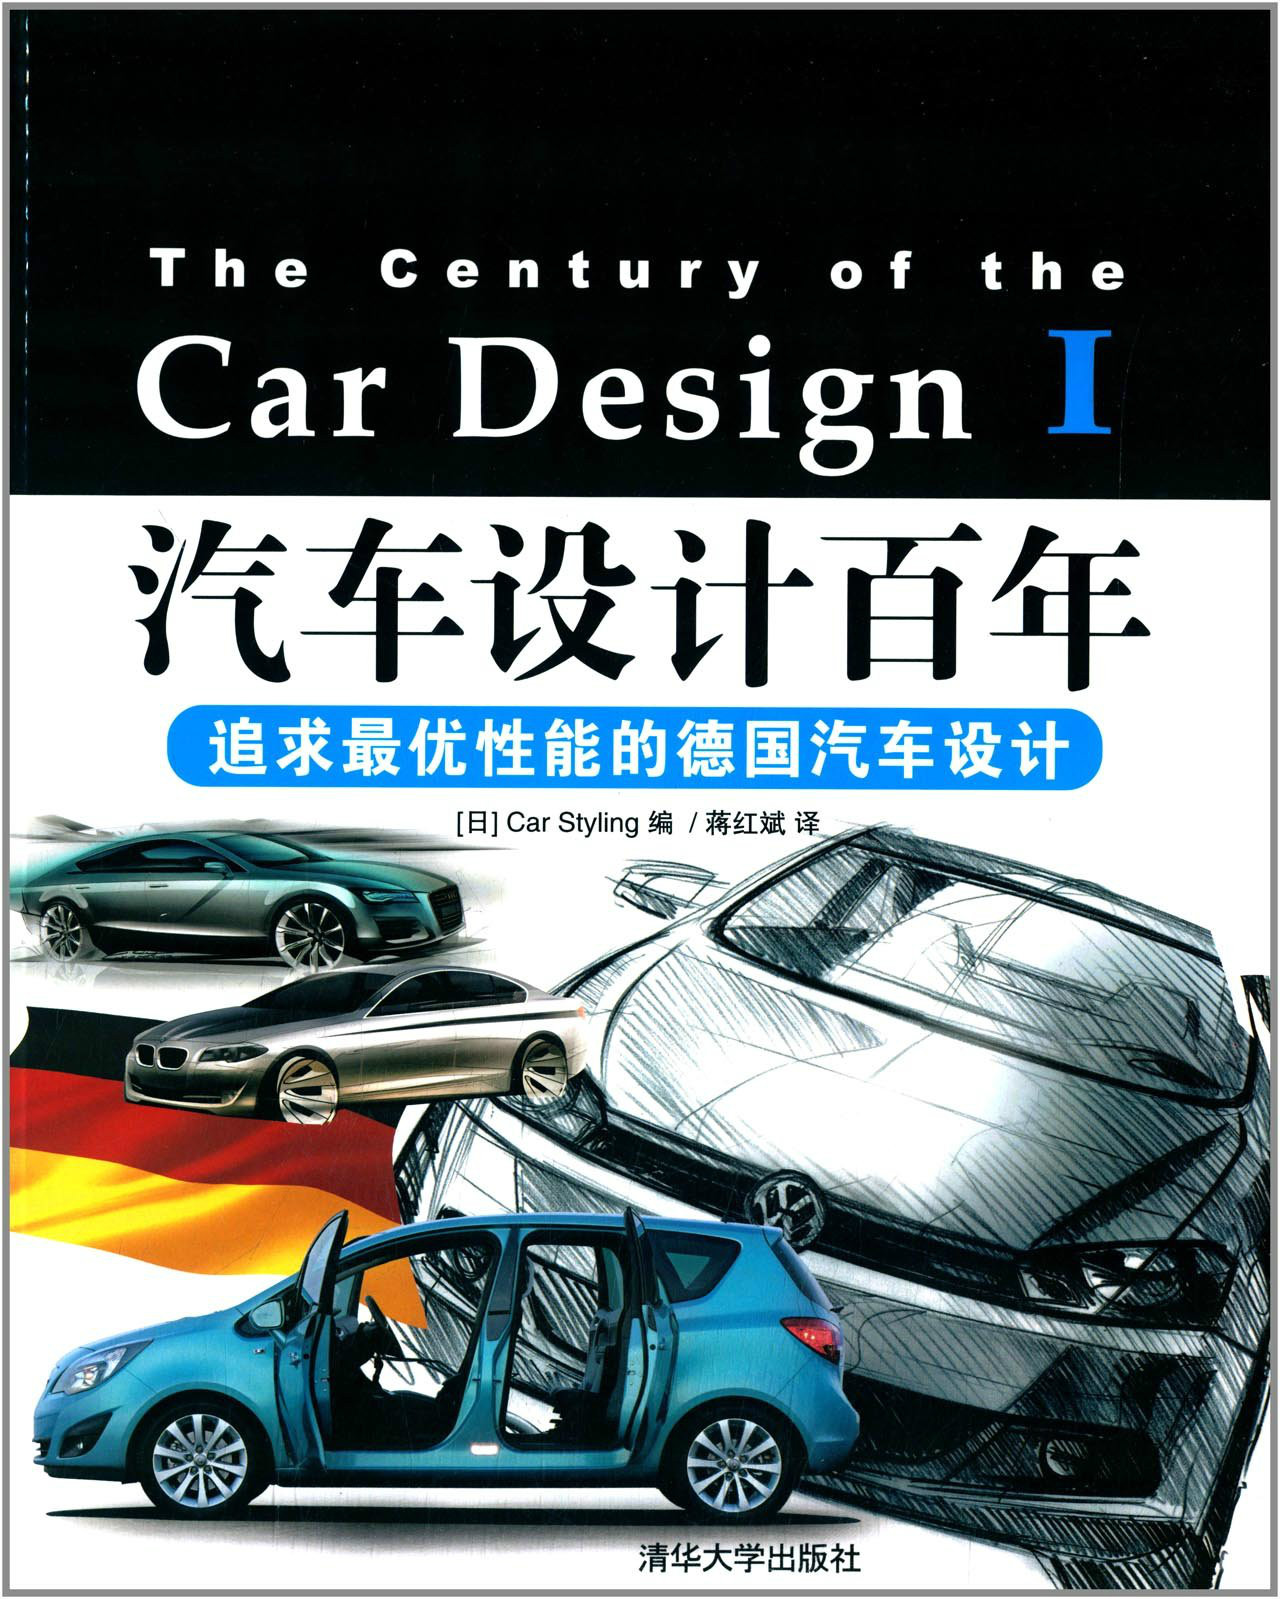 汽車設計百年——追求最優性能的德國汽車設計